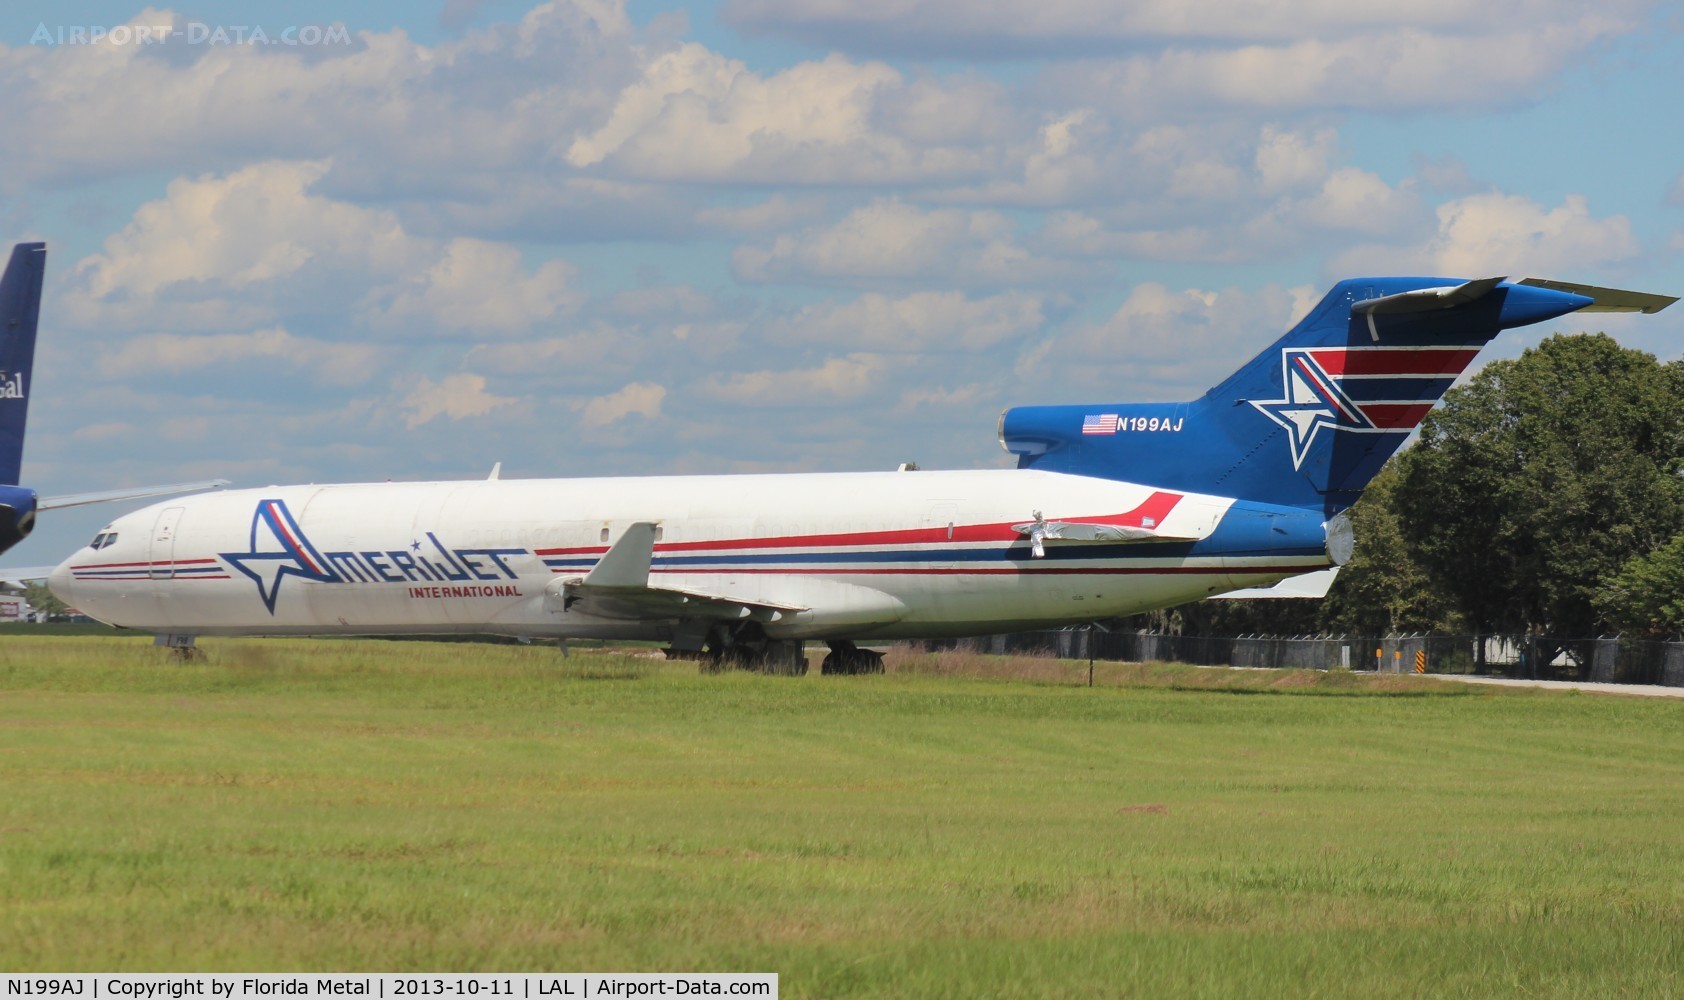 N199AJ, 1979 Boeing 727-2F9 C/N 21426, Amerijet 727-200